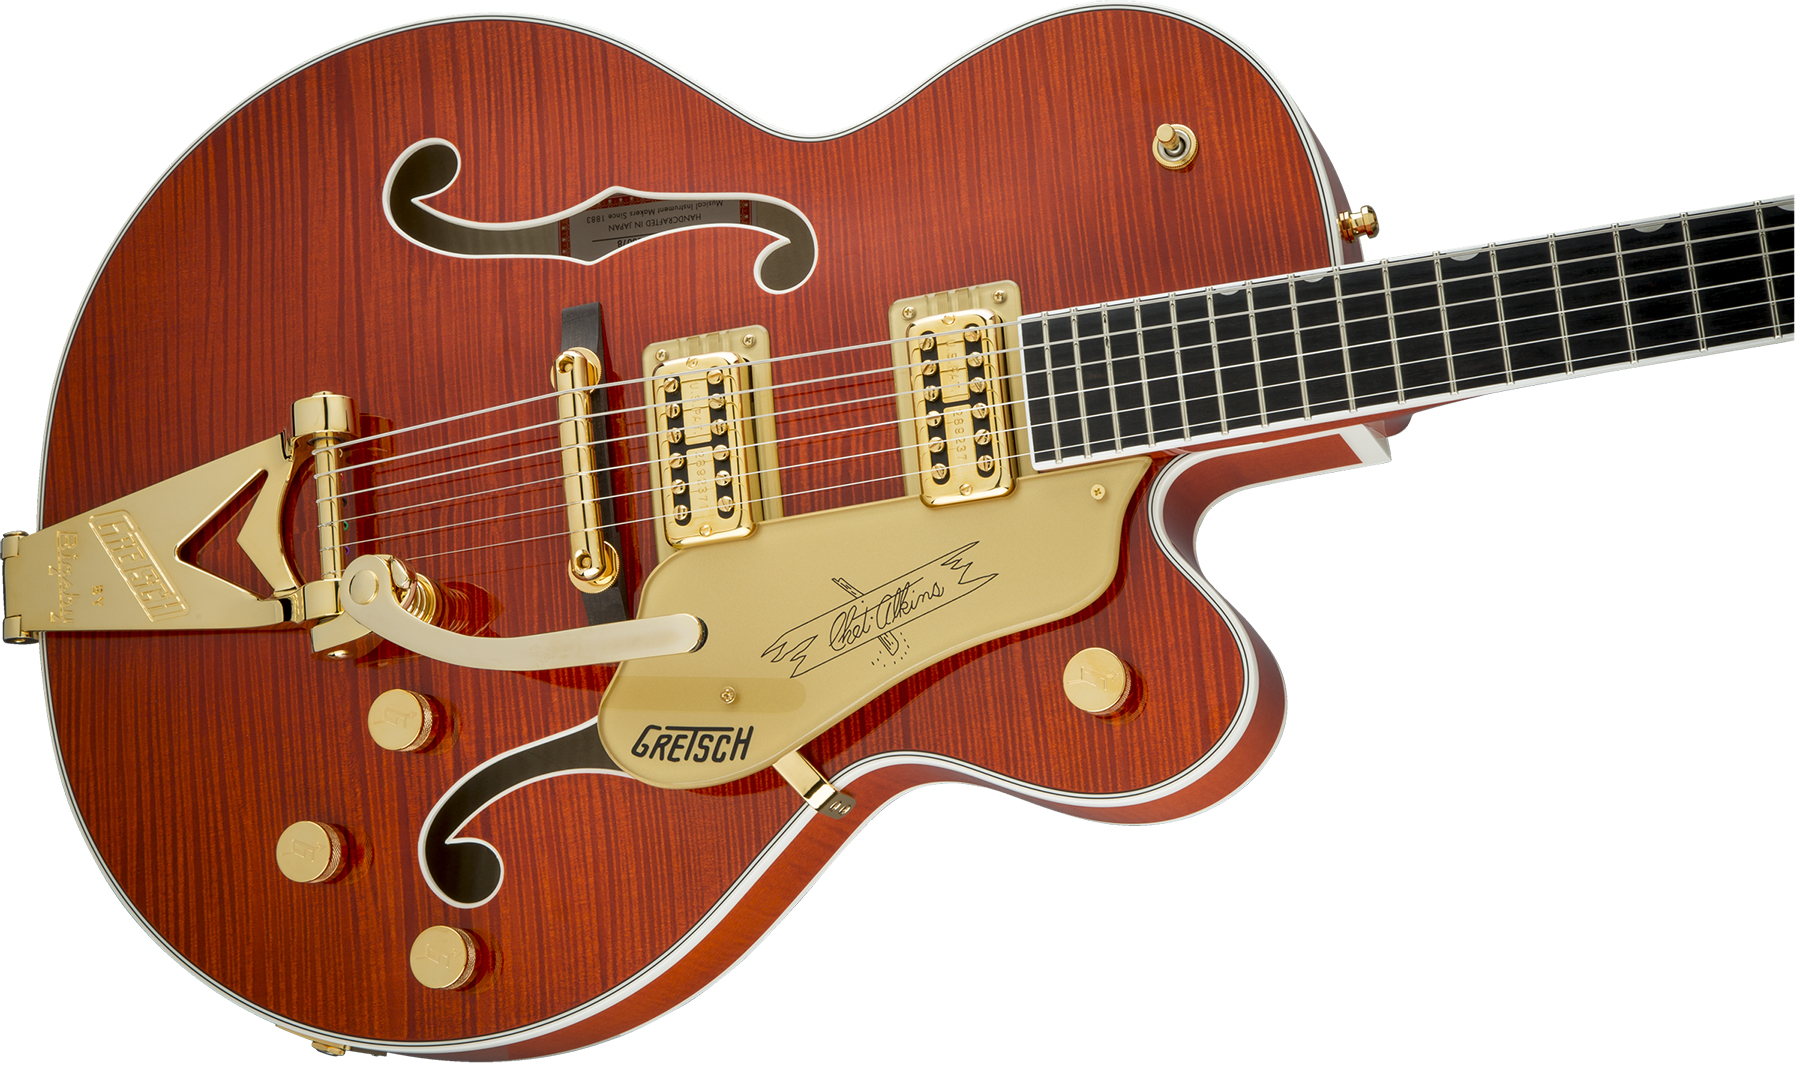 Gretsch G6120tfm Players Edition Nashville Pro Jap Bigsby Eb - Orange Stain - Semi hollow elektriche gitaar - Variation 2